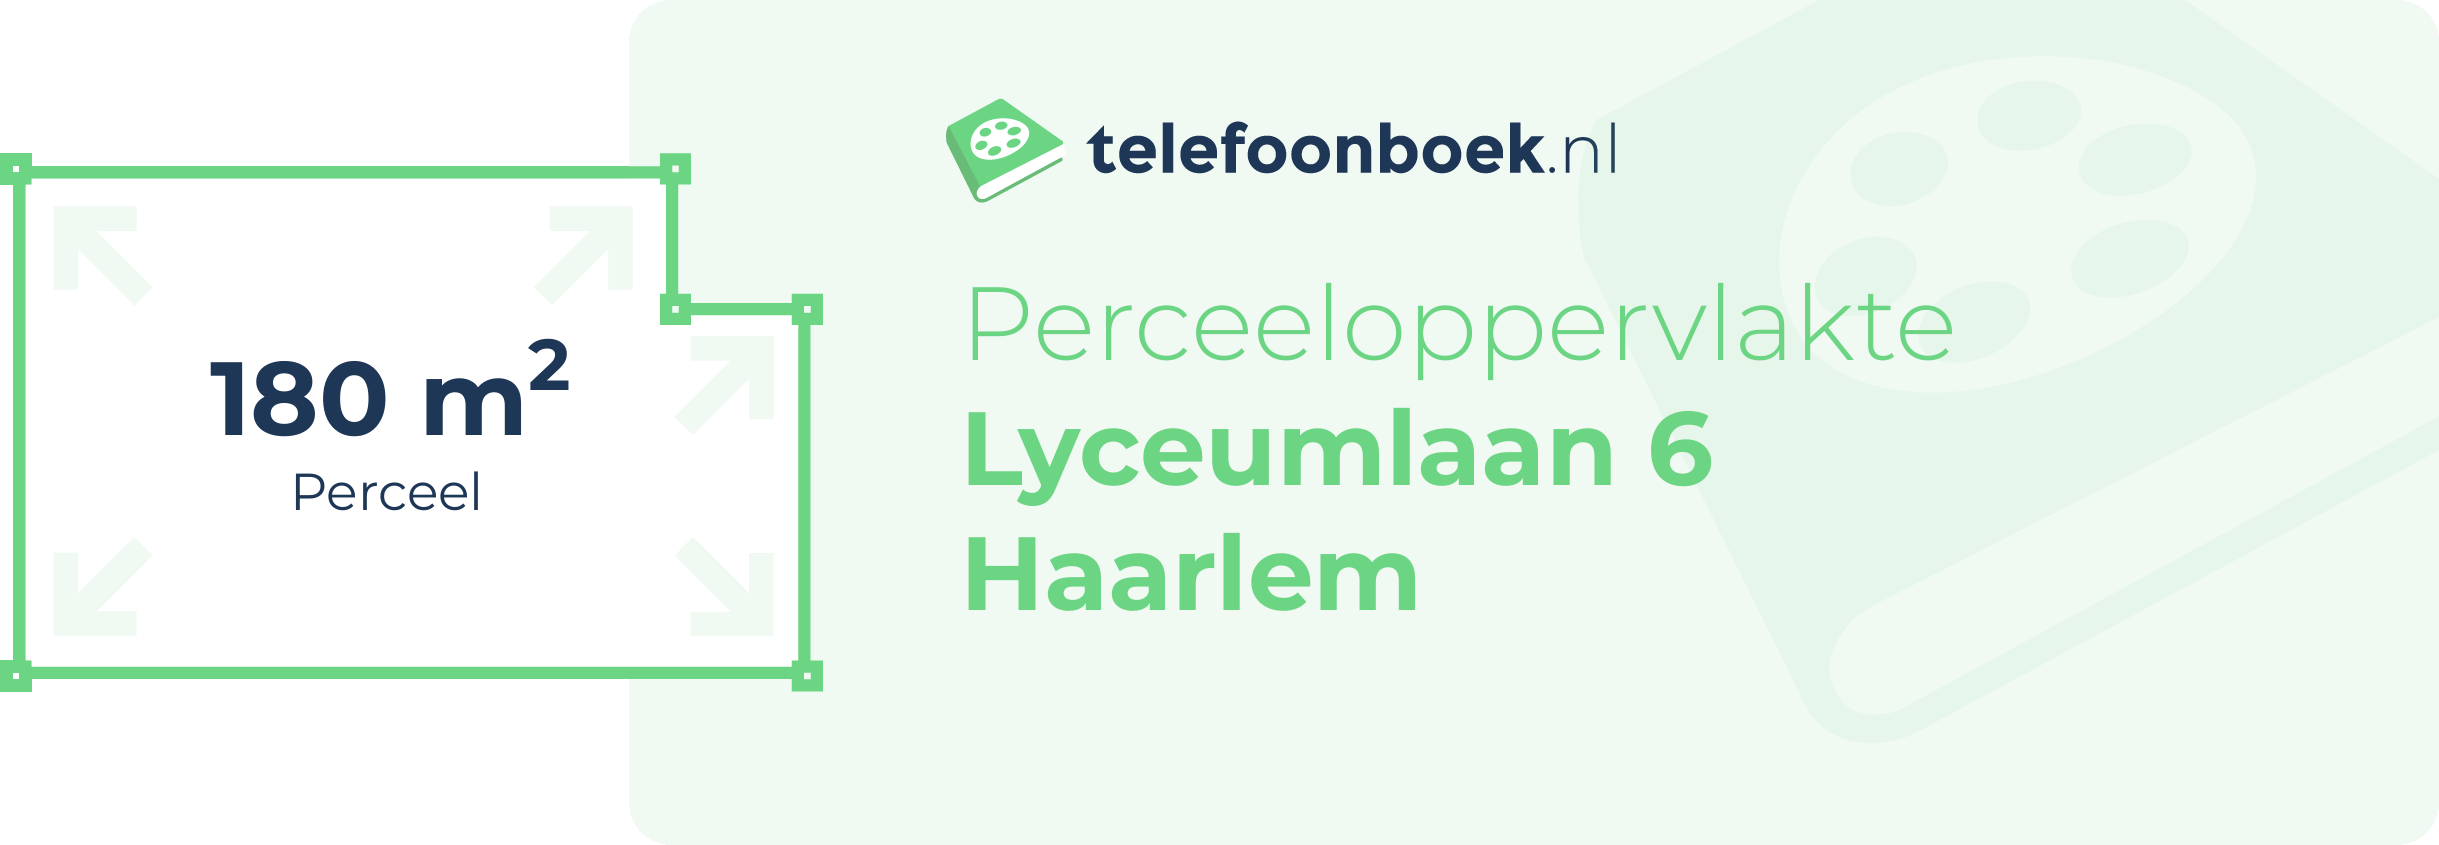 Perceeloppervlakte Lyceumlaan 6 Haarlem